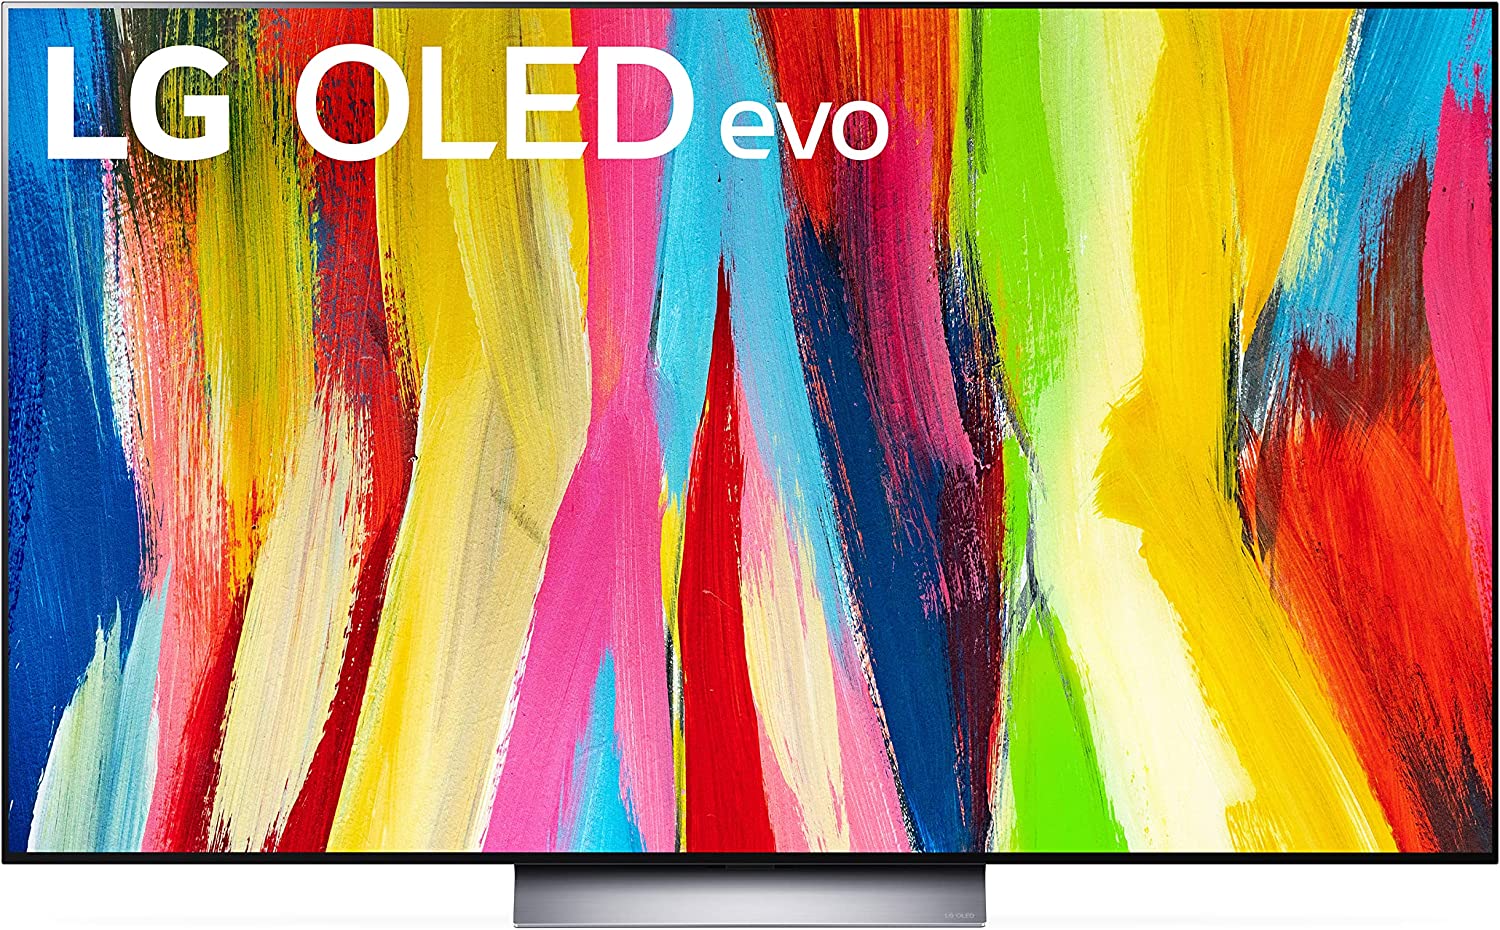 LG OLED evo serie C2 televisor inteligente 4K de 65 pulgadas con Alexa integrado, frecuencia de actualización de 120 Hz, Dolby Vision IQ, Dolby Atmos, WiSA Ready y Cloud Gaming (OLED65C2PUA, 2022)